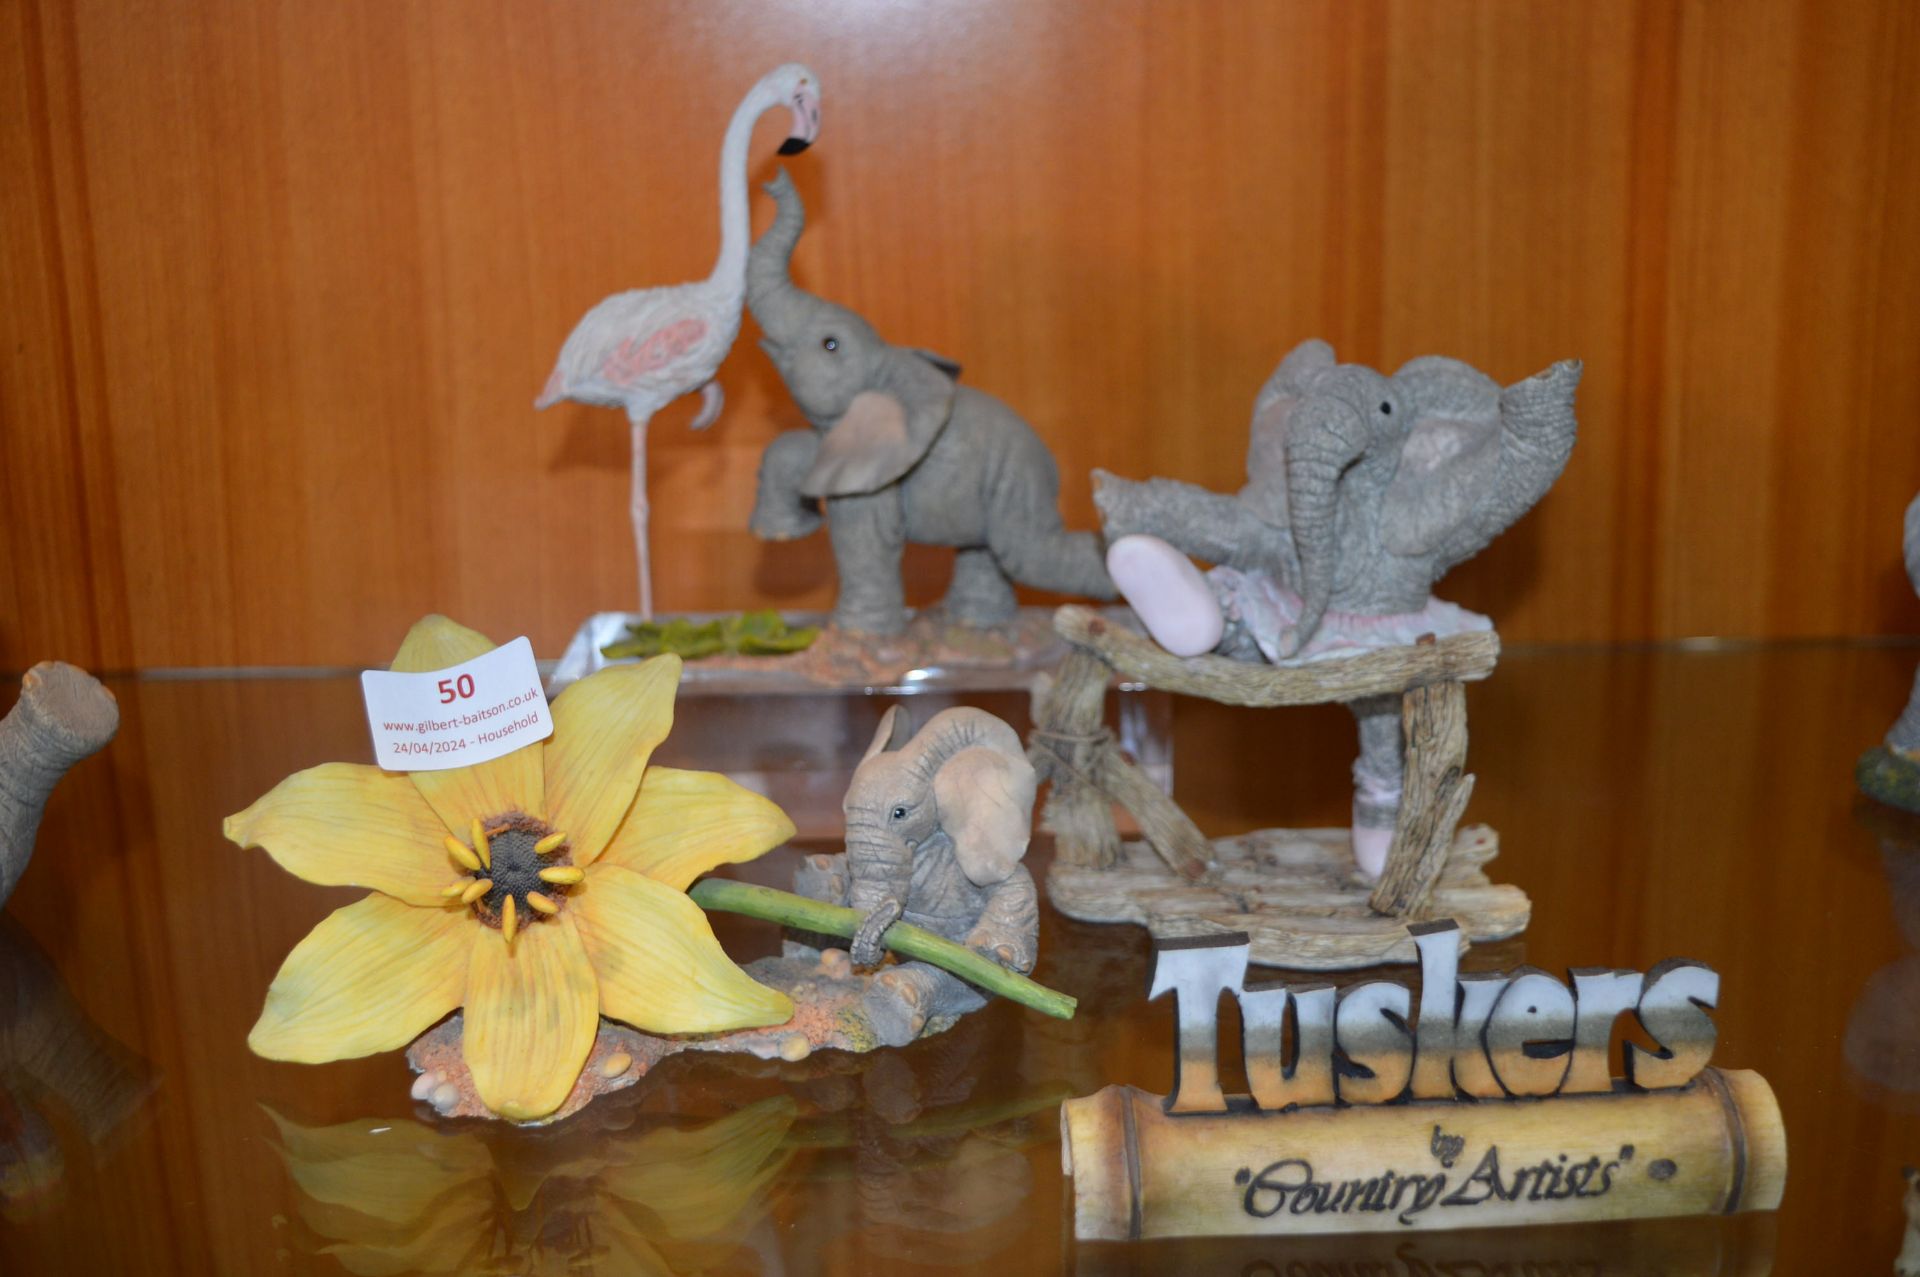 Three Tuskers Elephant Figures